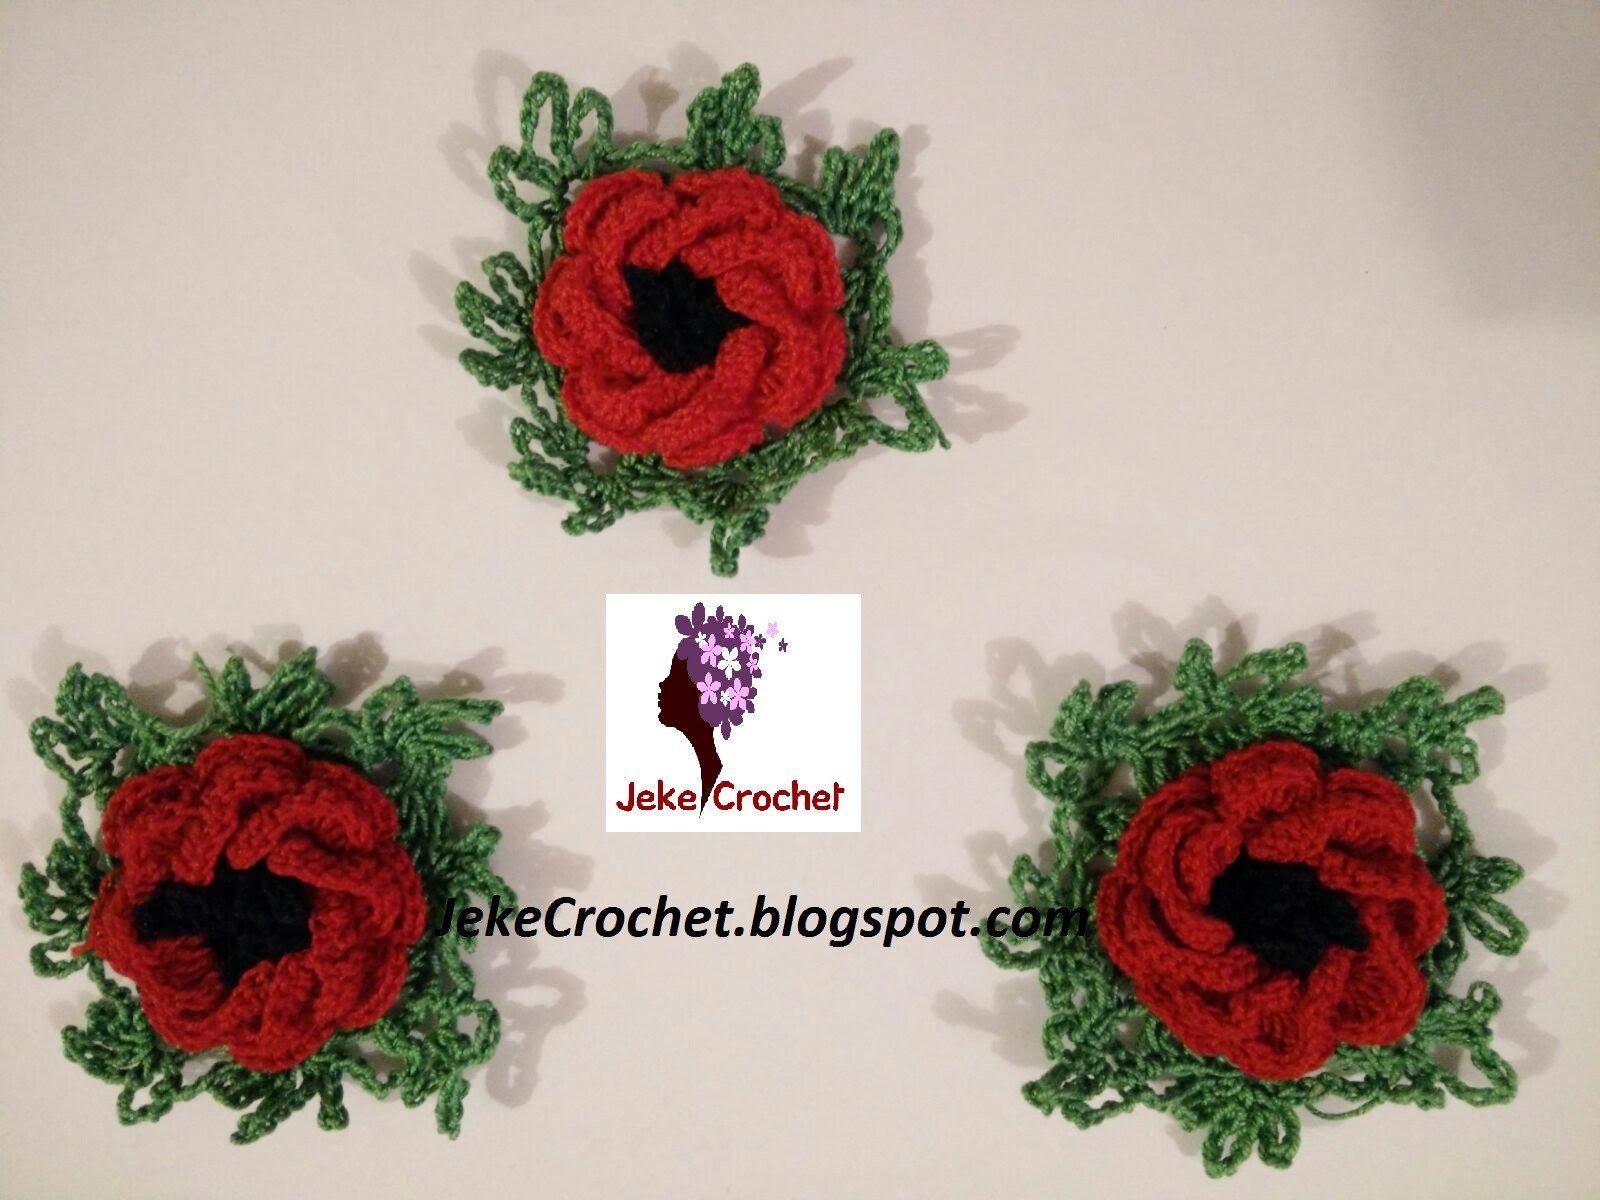 Amapola - Papavero - Poppy Flower (modelo 1) - Crochet- Ganchillo - Uncinetto. Paso a Paso